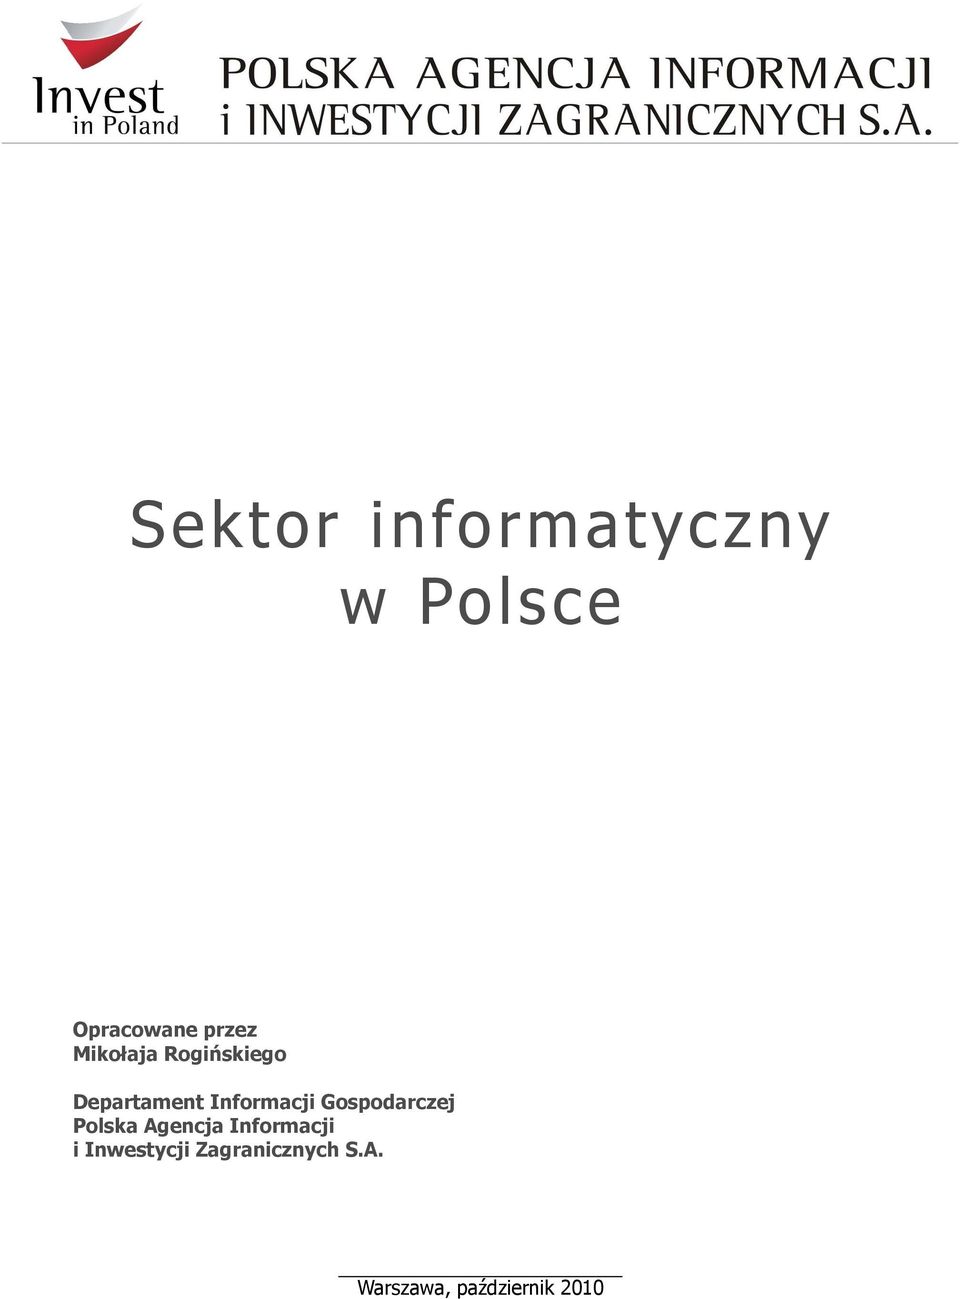 Gospodarczej Polska Agencja Informacji i